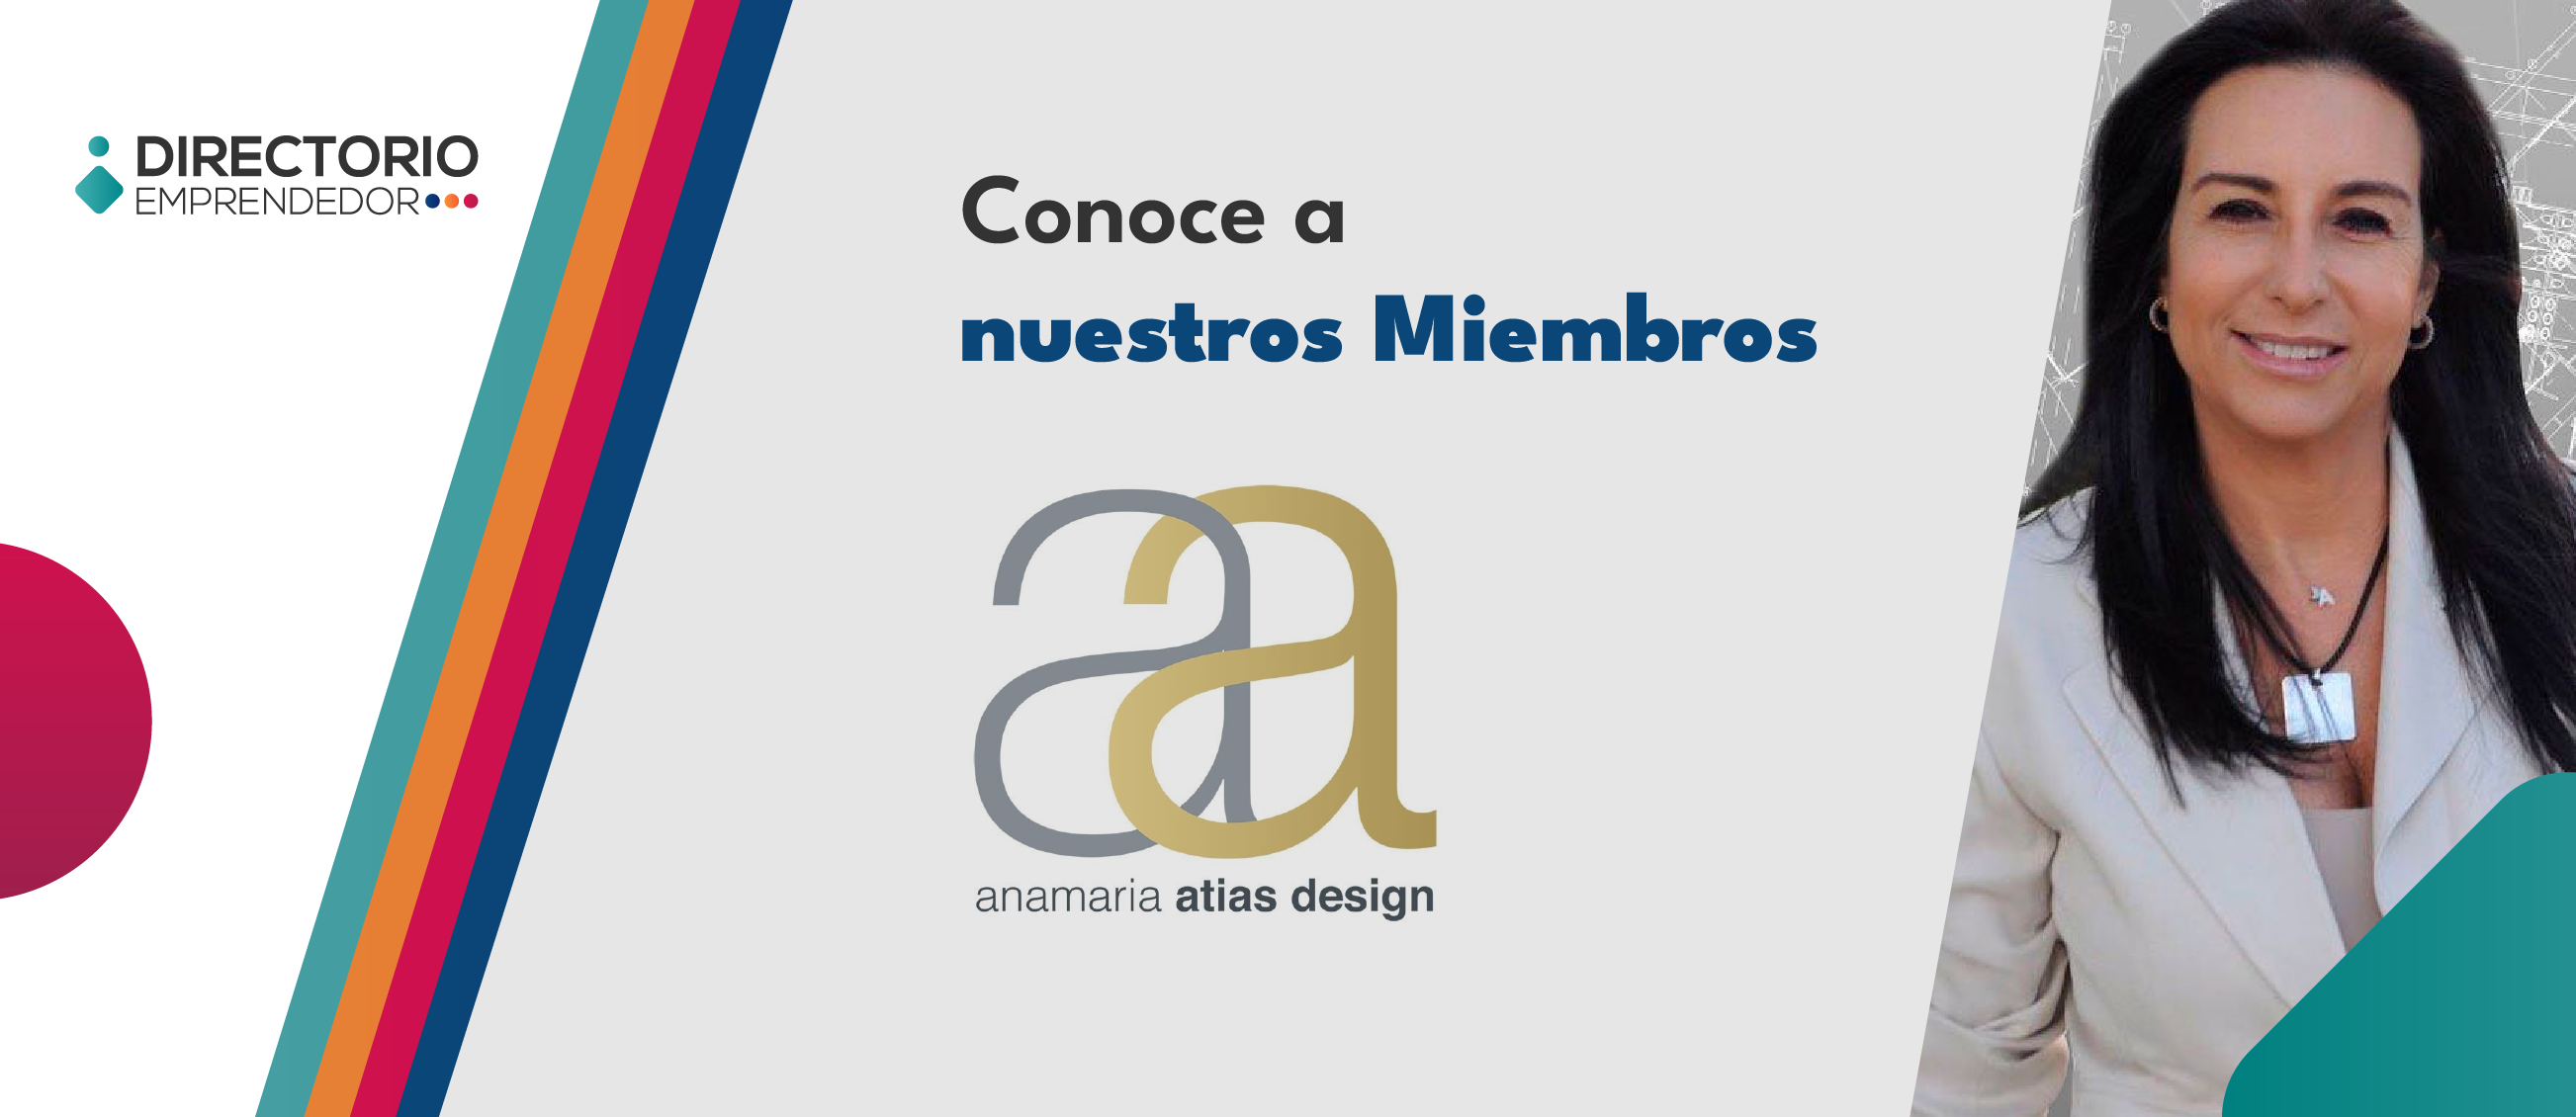 Anamaria Atias: “El diseño de interiores a nivel residencial me permite asistir al cliente y darle calidad a sus espacios”